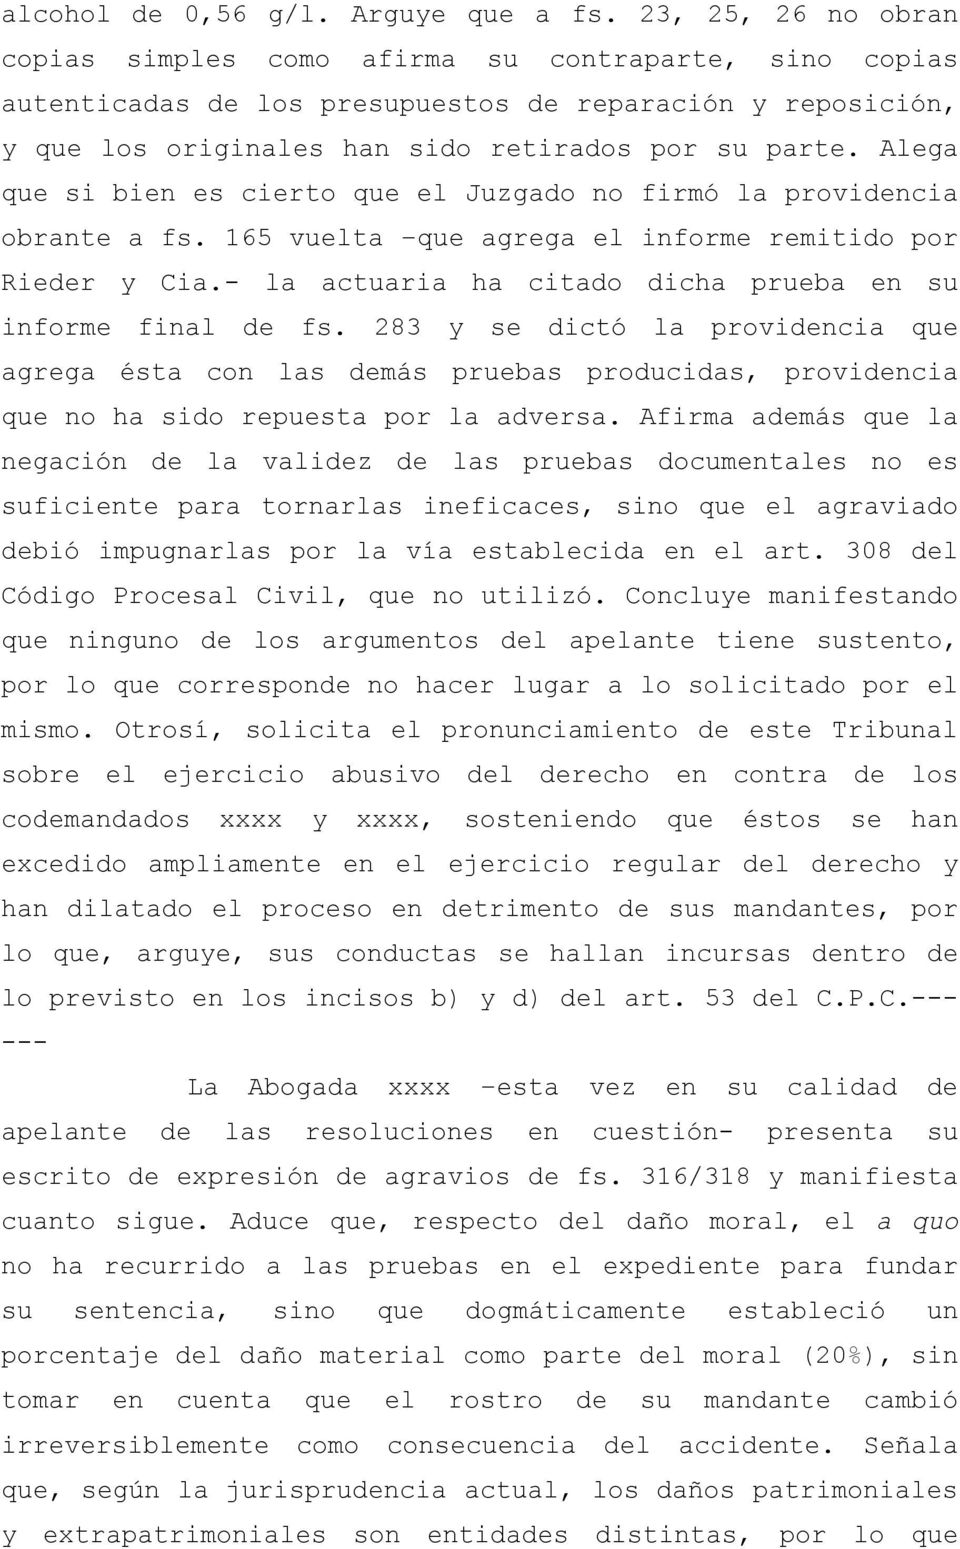 Alega que si bien es cierto que el Juzgado no firmó la providencia obrante a fs. 165 vuelta que agrega el informe remitido por Rieder y Cia.